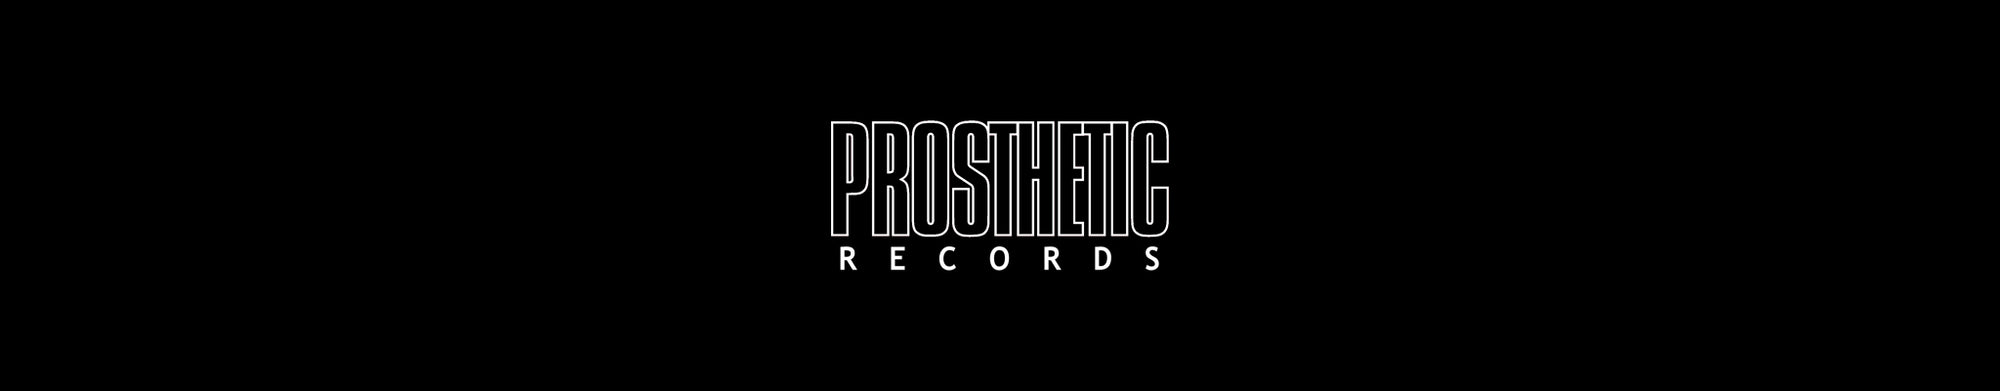 PROSTHETIC RECORDS